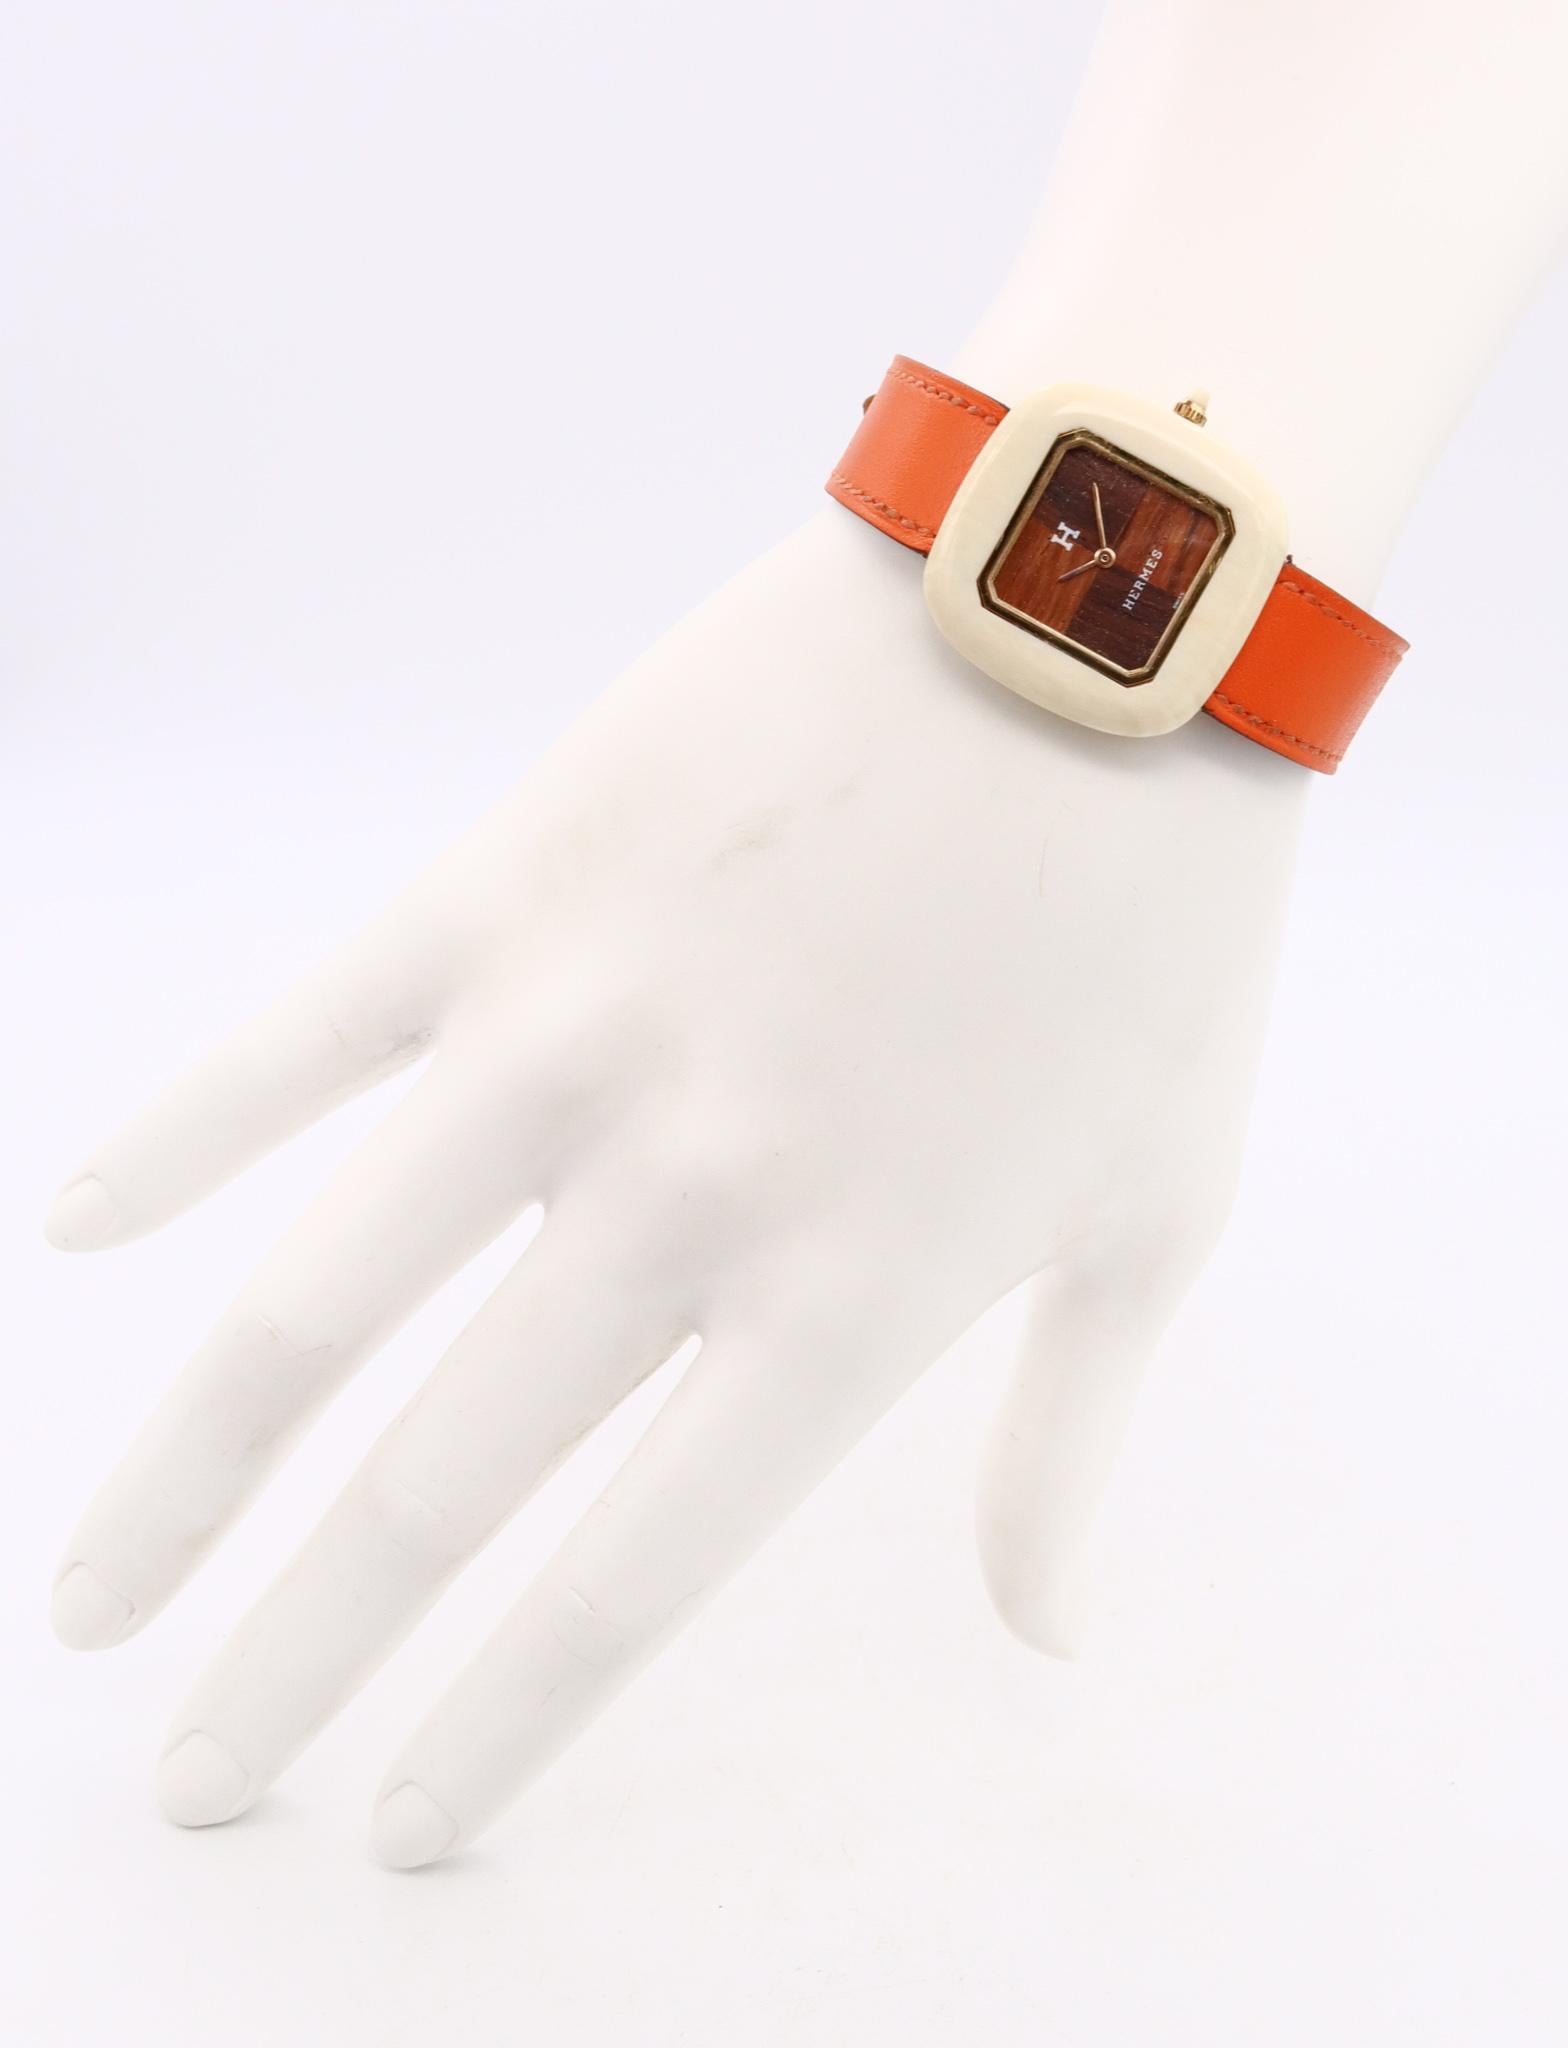 Rare montre-bracelet vintage conçue par Hermès.

Pièce de collection très importante, créée par la maison Hermès à Paris, France, vers les années 1970.

Le boîtier de cette montre-bracelet est constitué d'un coussin carré de 30 mm sur 30 mm, réalisé